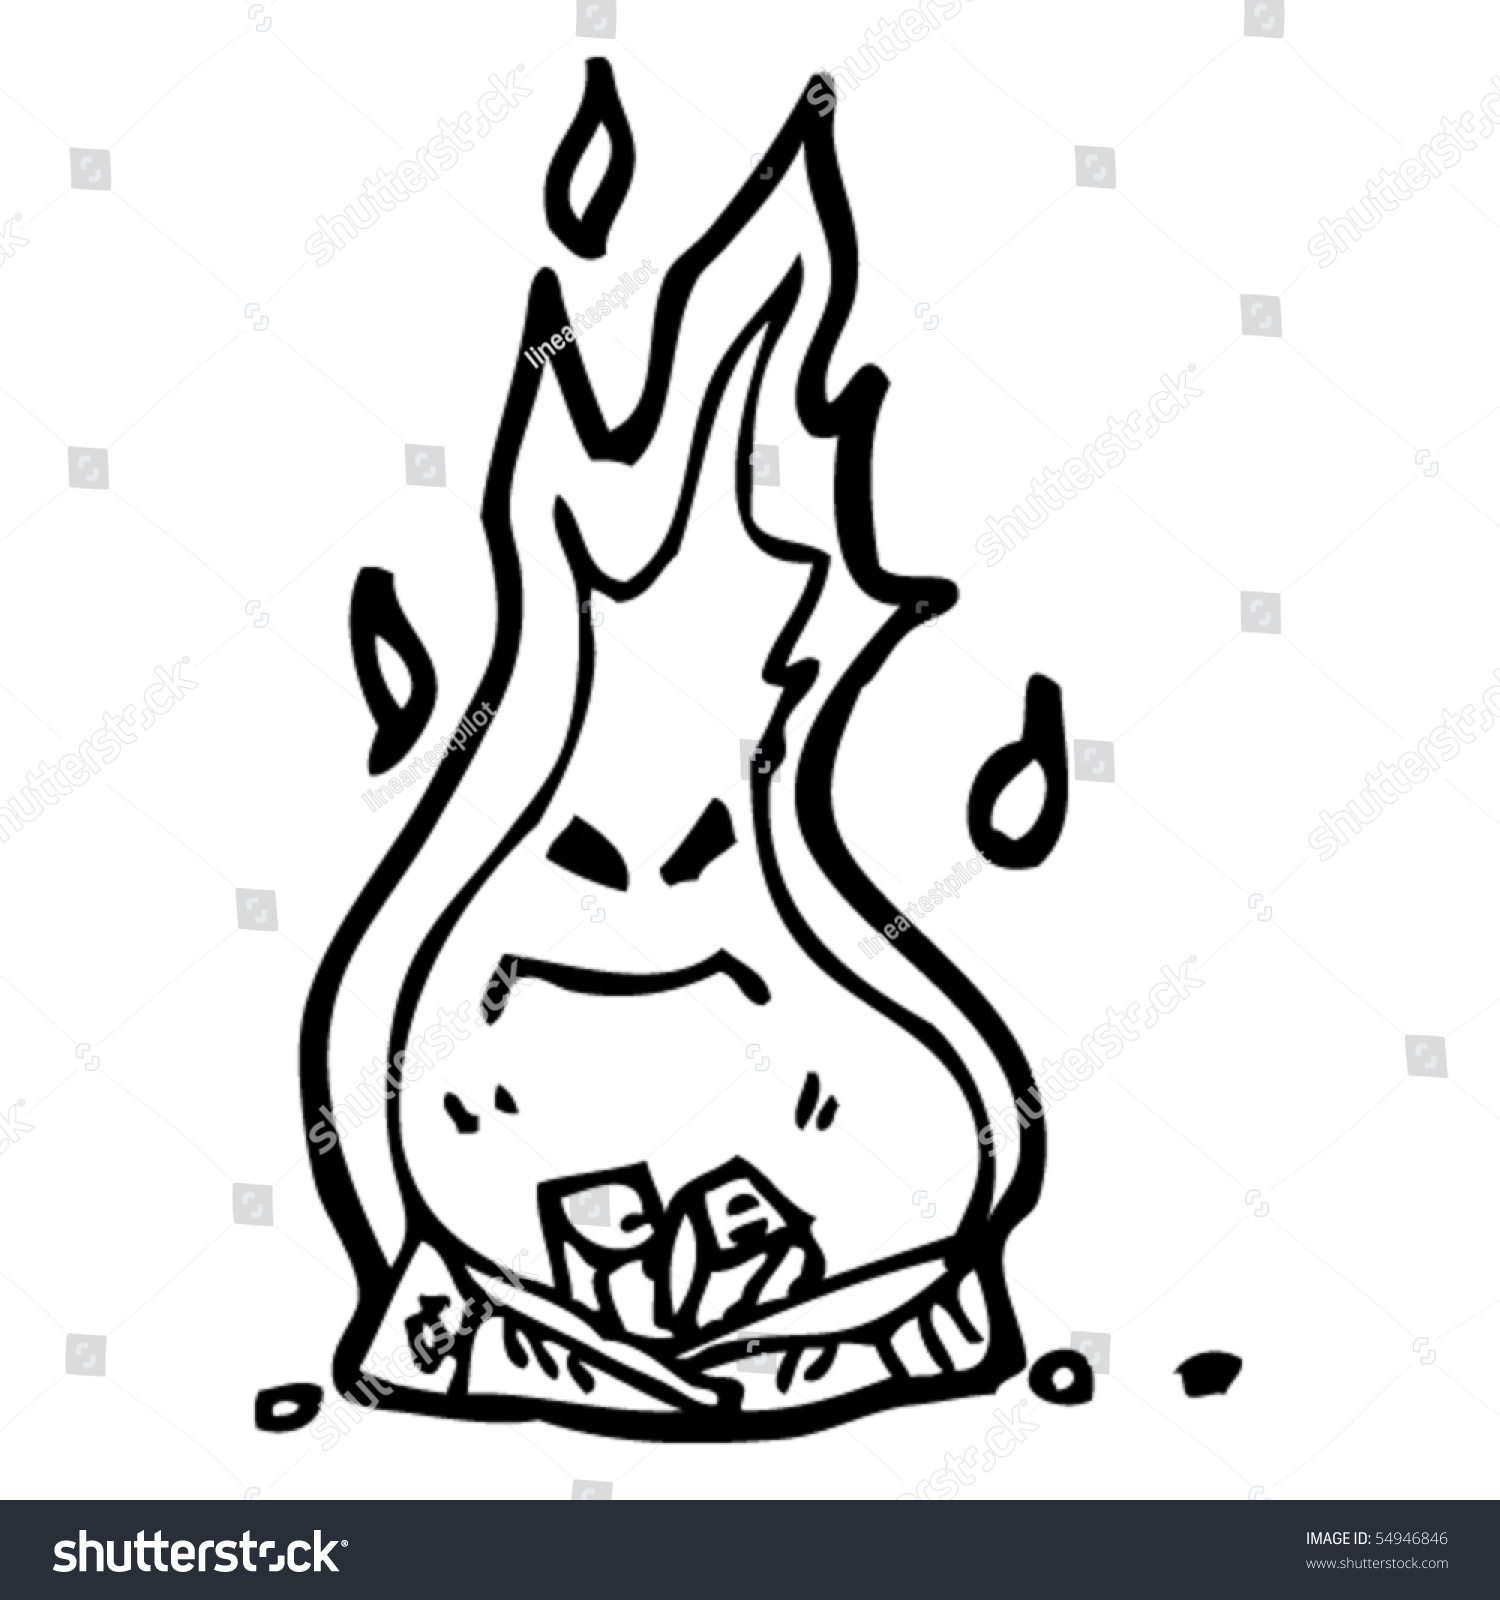 Fire Cartoon Stock Vector Illustration 54946846 : Shutterstock